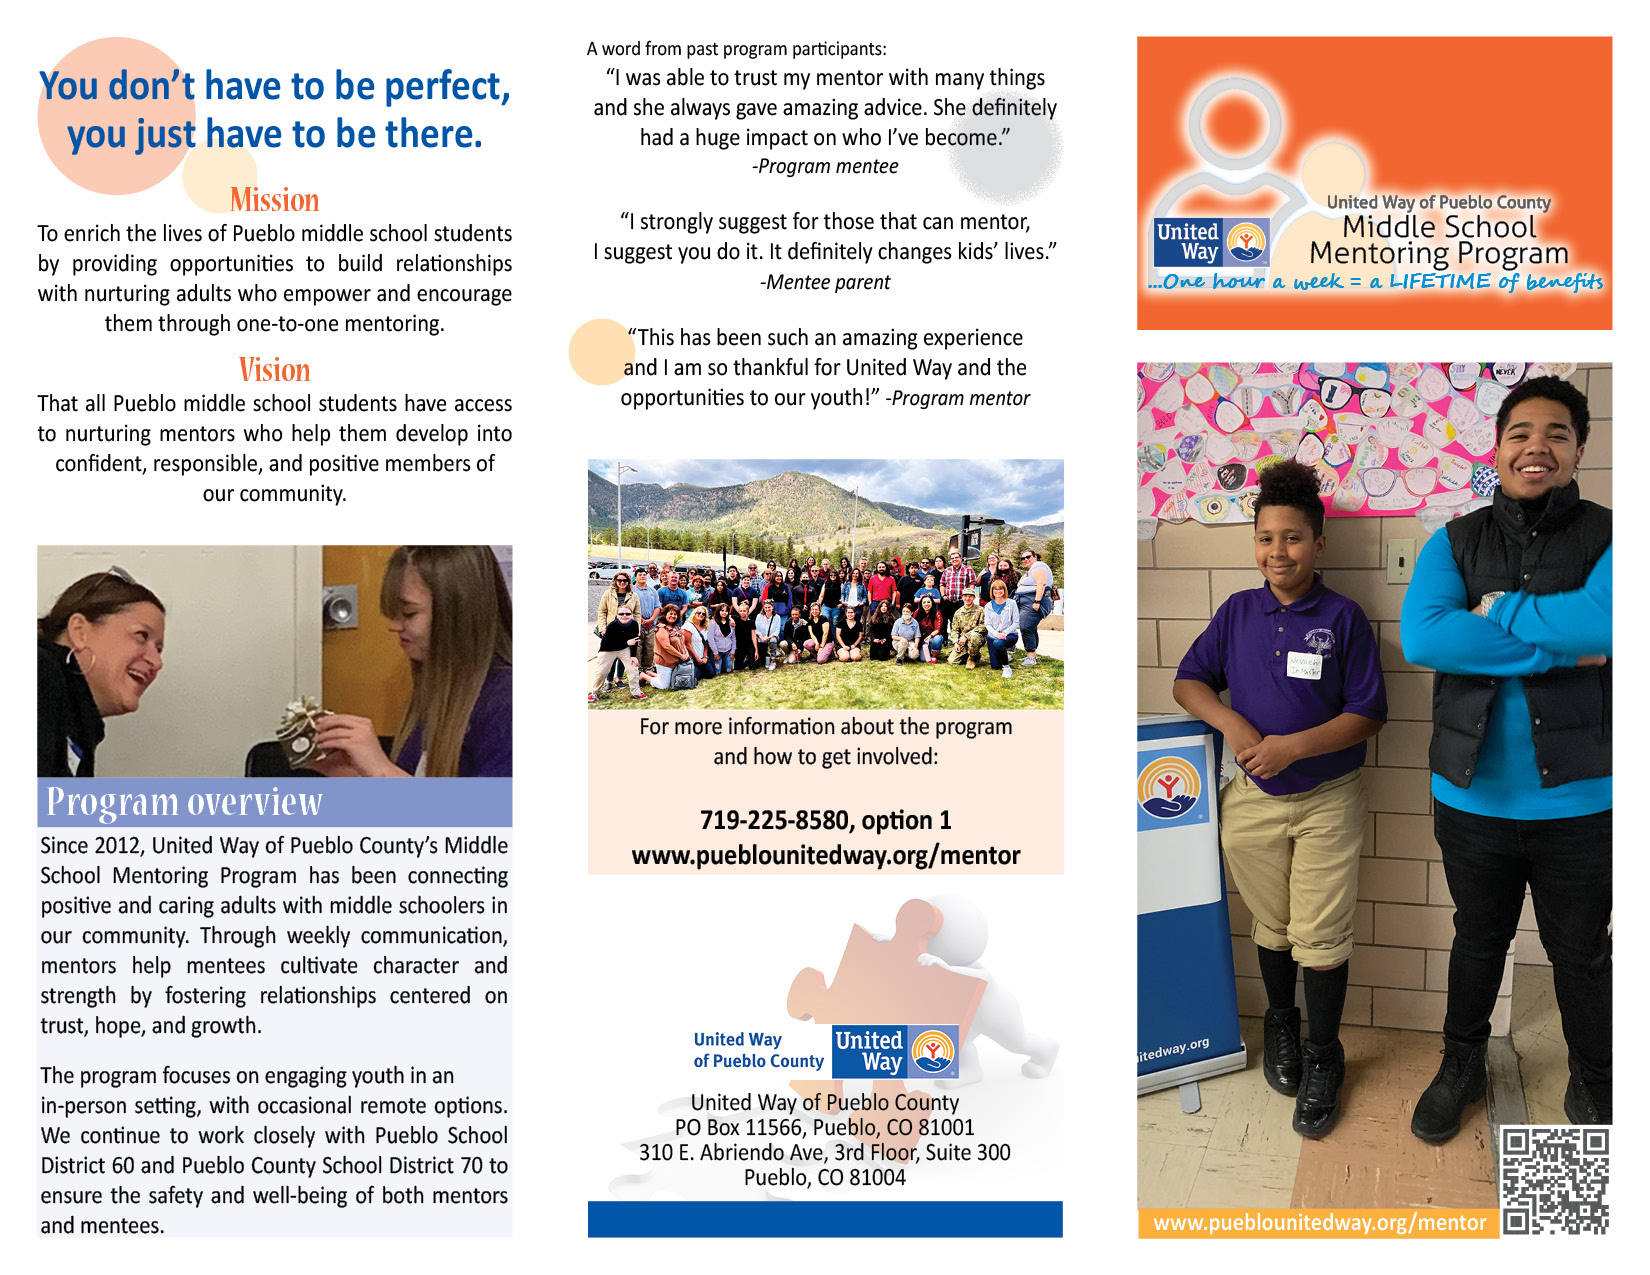 UWPC Middle School Mentoring Program Brochure